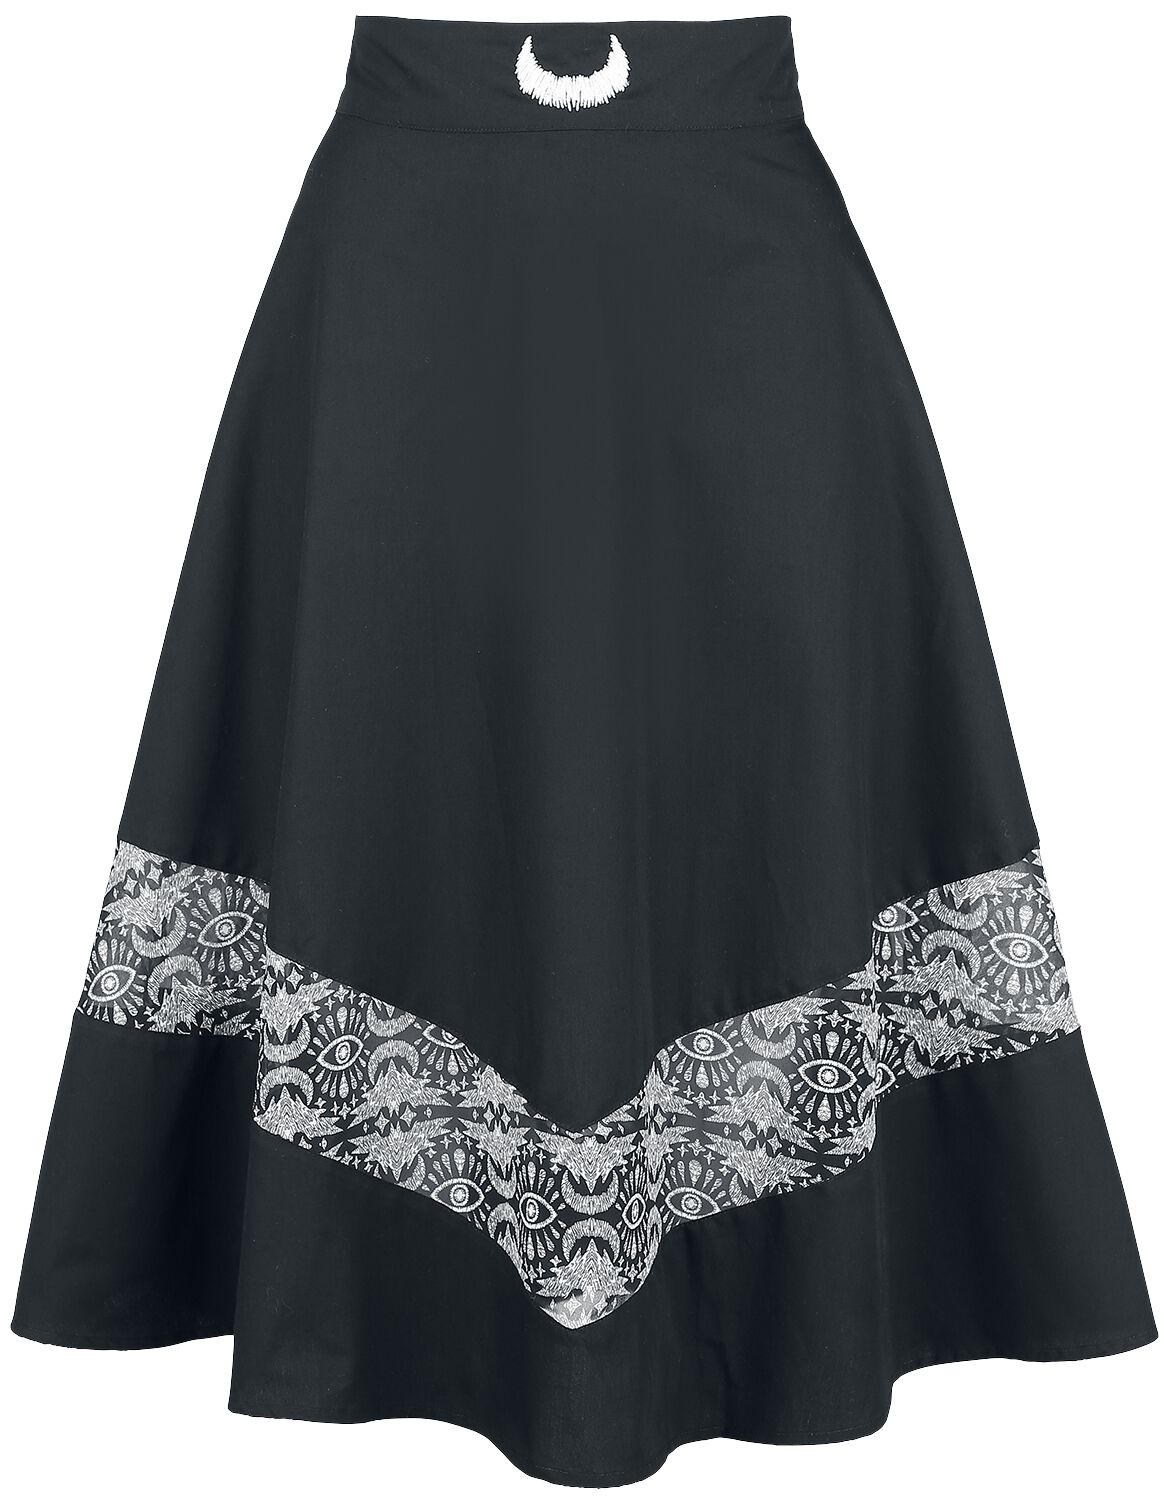 Coven United Batwing Midi Skirt Medium-length skirt black white